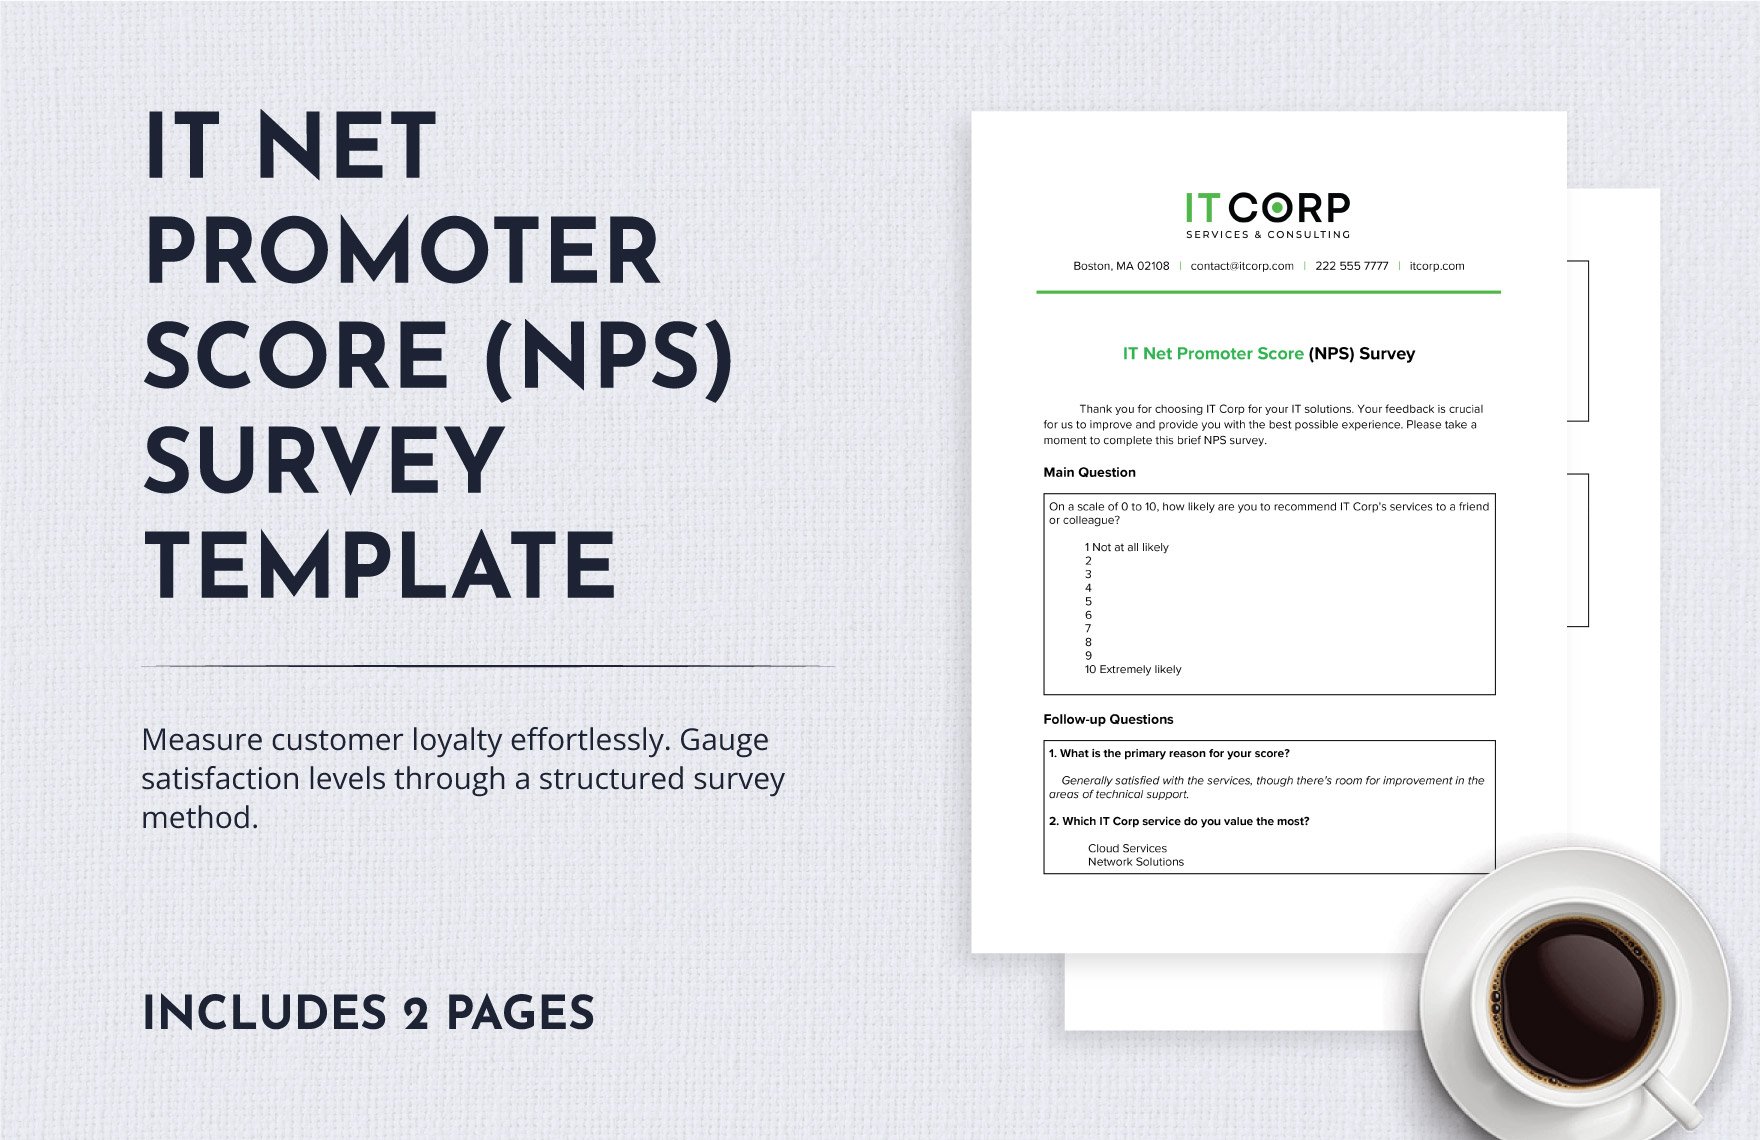 IT Net Promoter Score (NPS) Survey Template